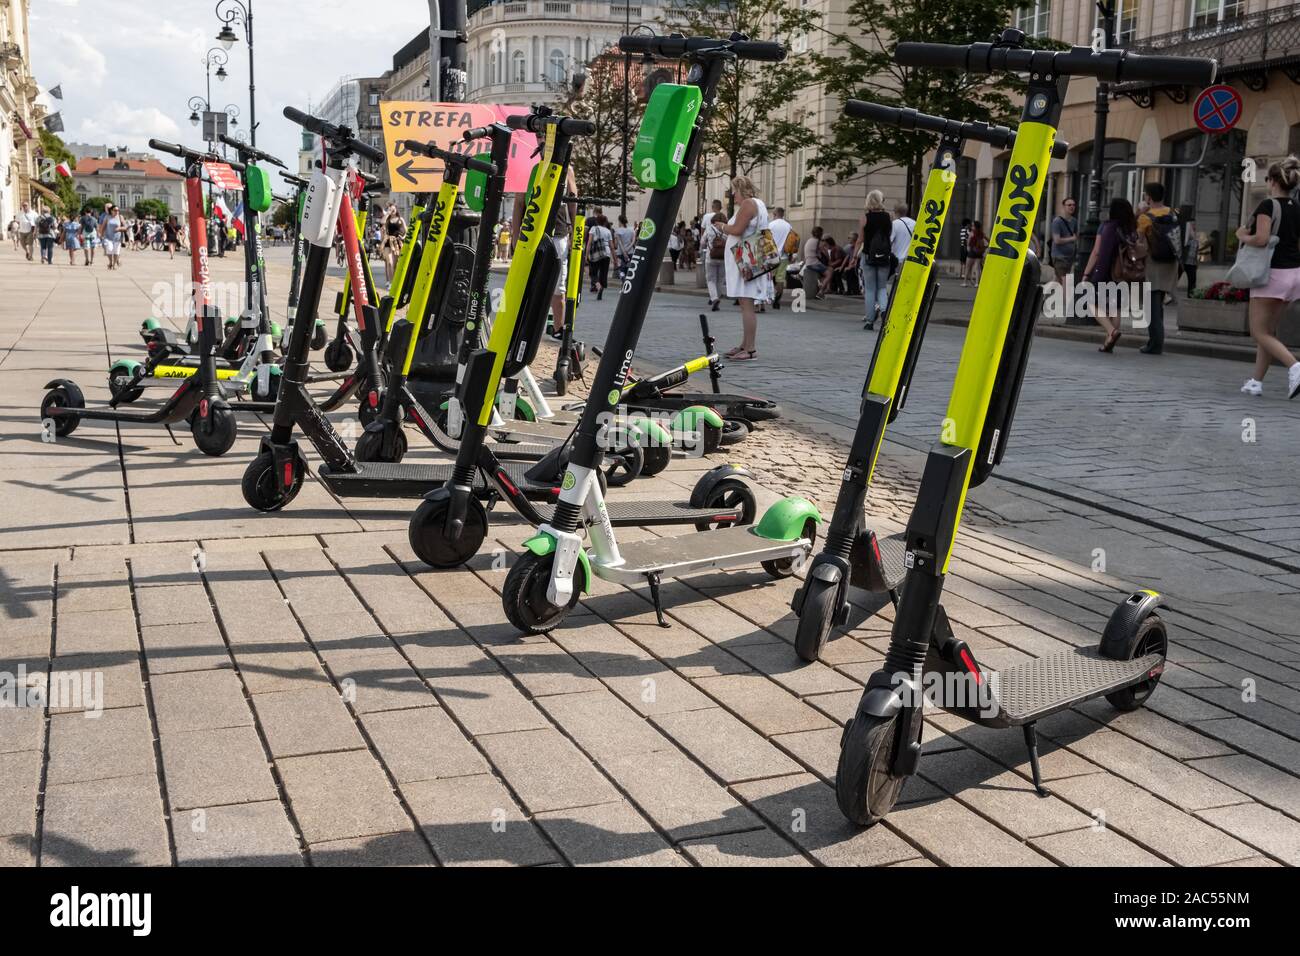 Molti scooter elettrici, escooter o e-scooter dell'autostop società HIve sinistra sul marciapiede in Varsavia, Polonia Foto Stock